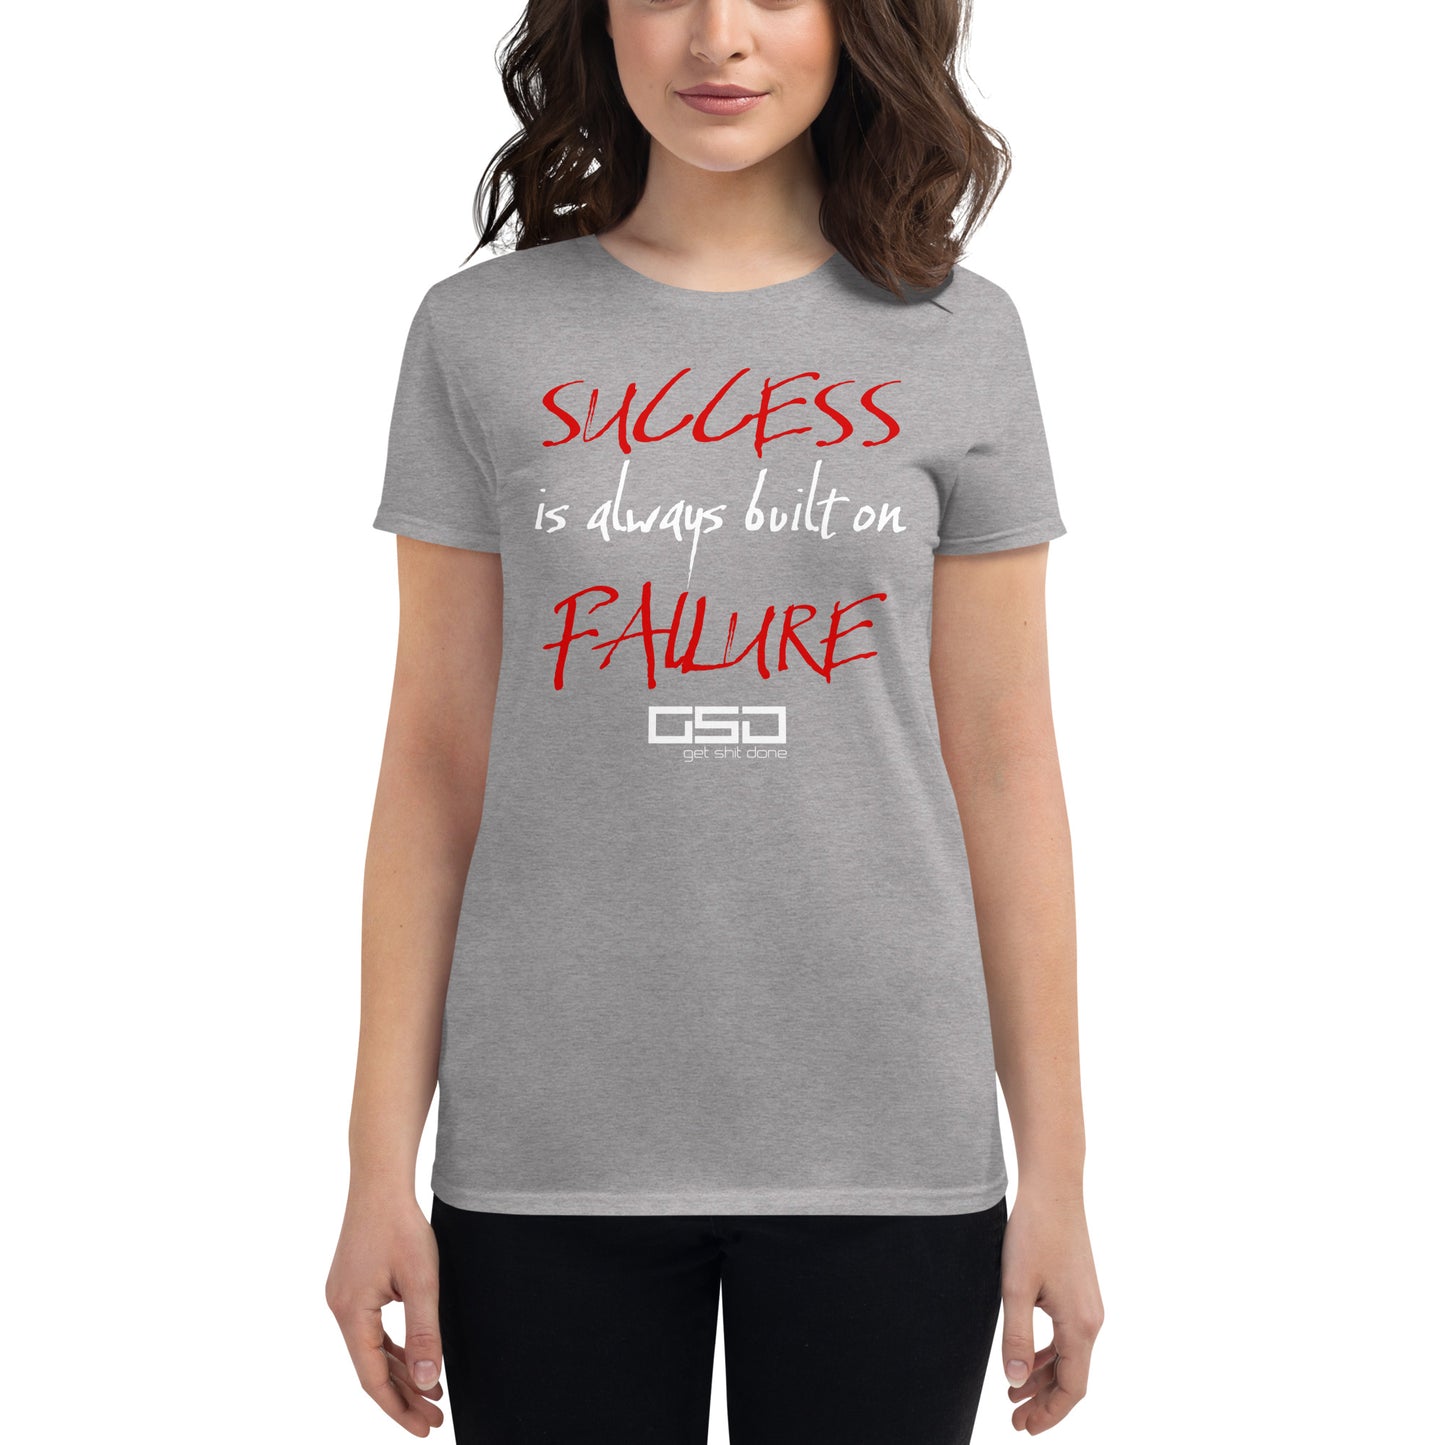 Success-Women's short sleeve t-shirt